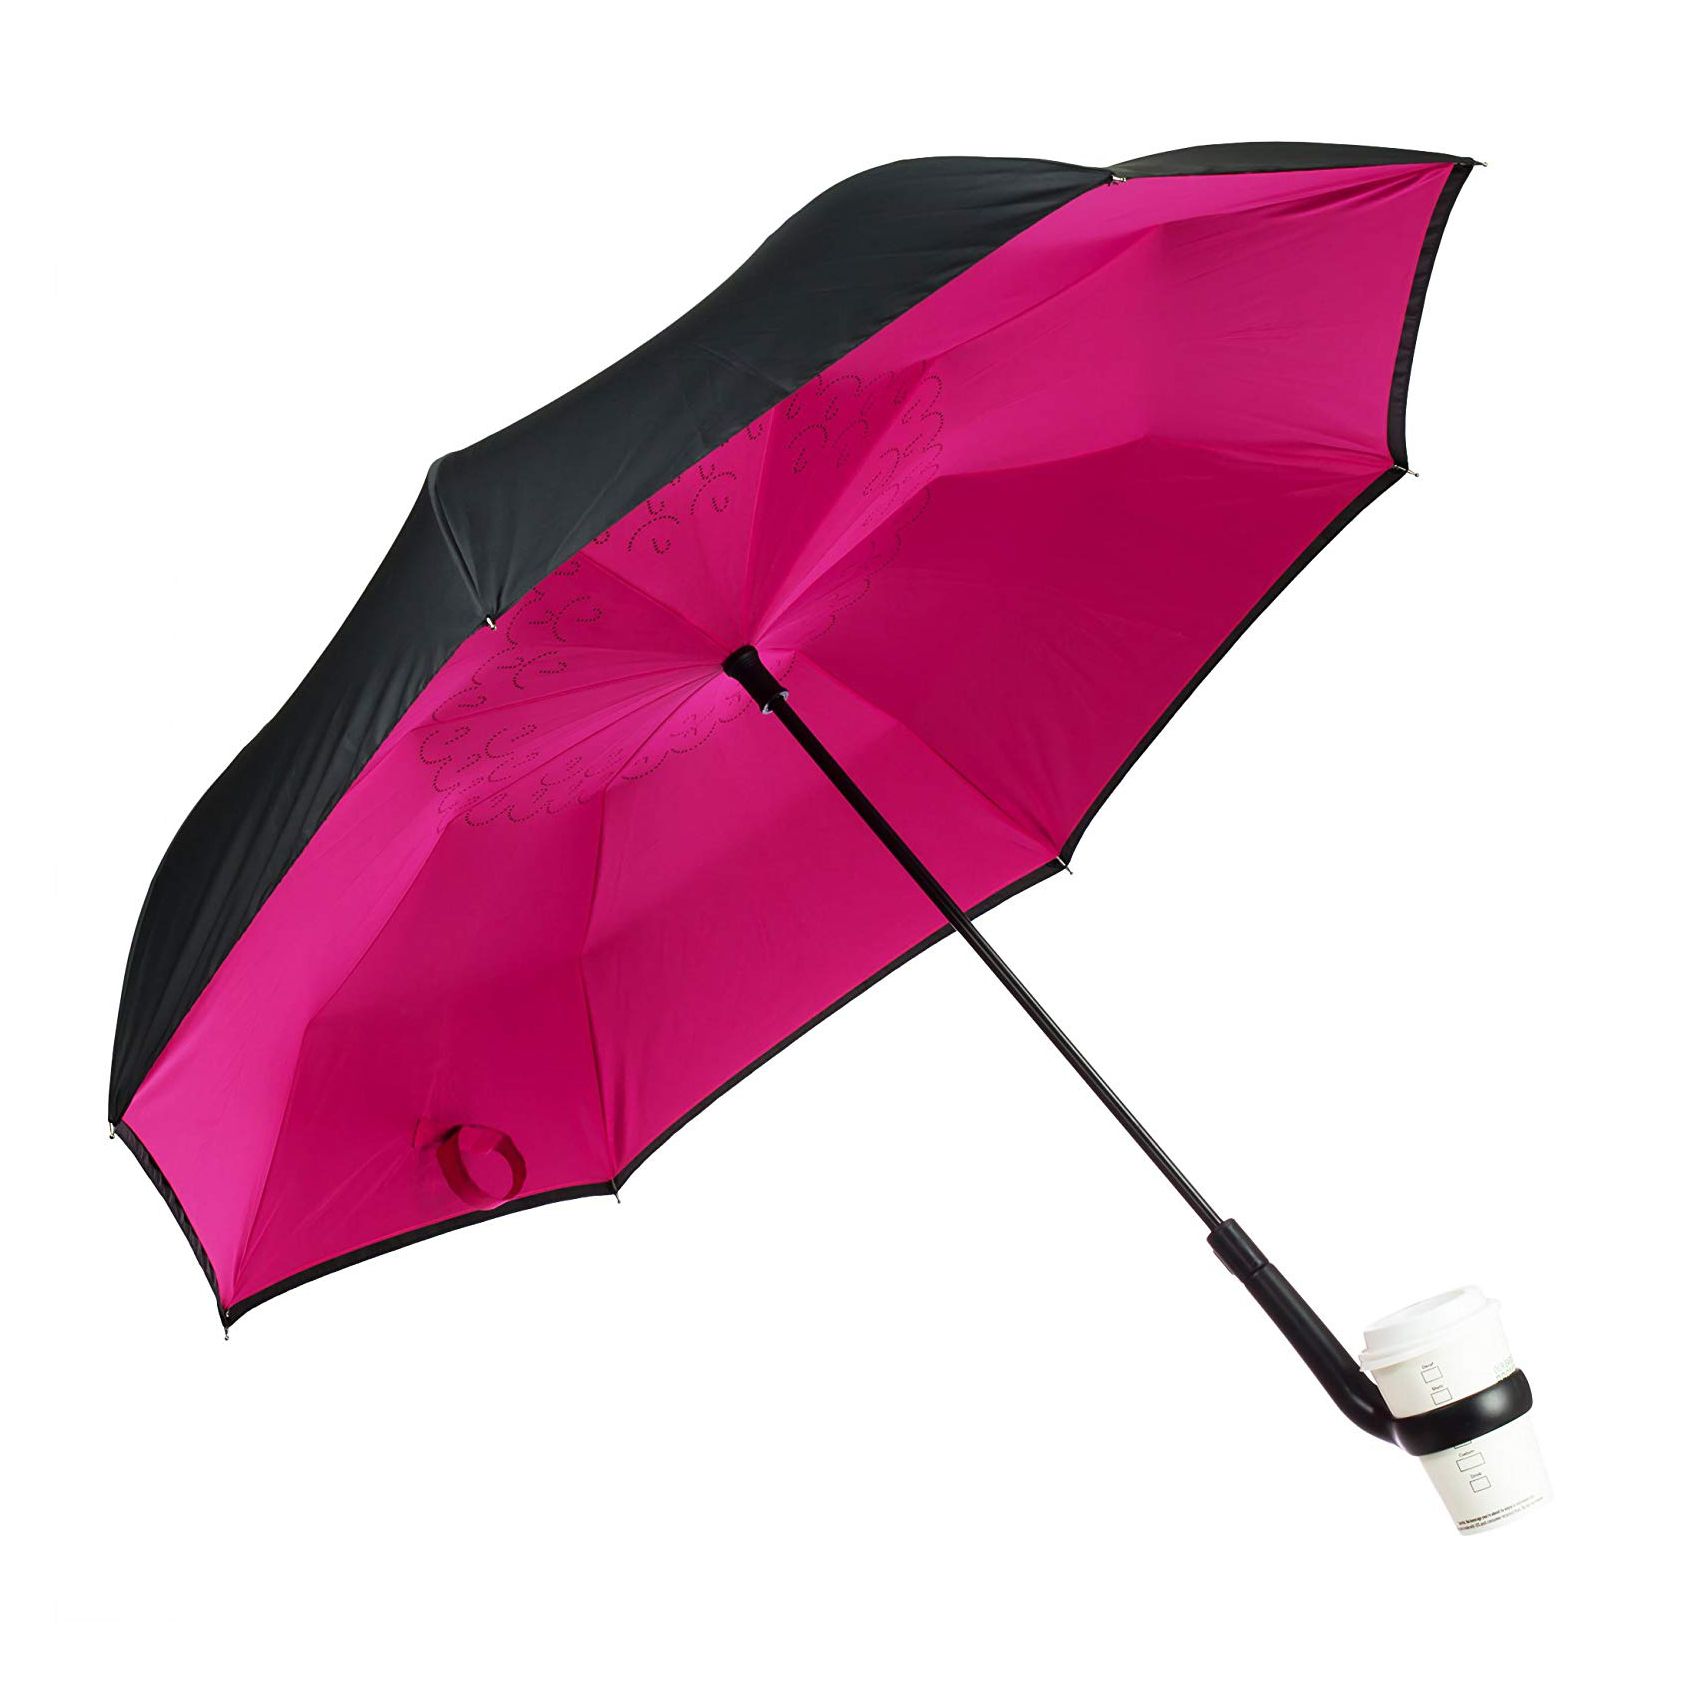 Tämä käännettävä sateenvarjo pitää kahvikupini ja tekee sateisista aamuista hieman helpompia